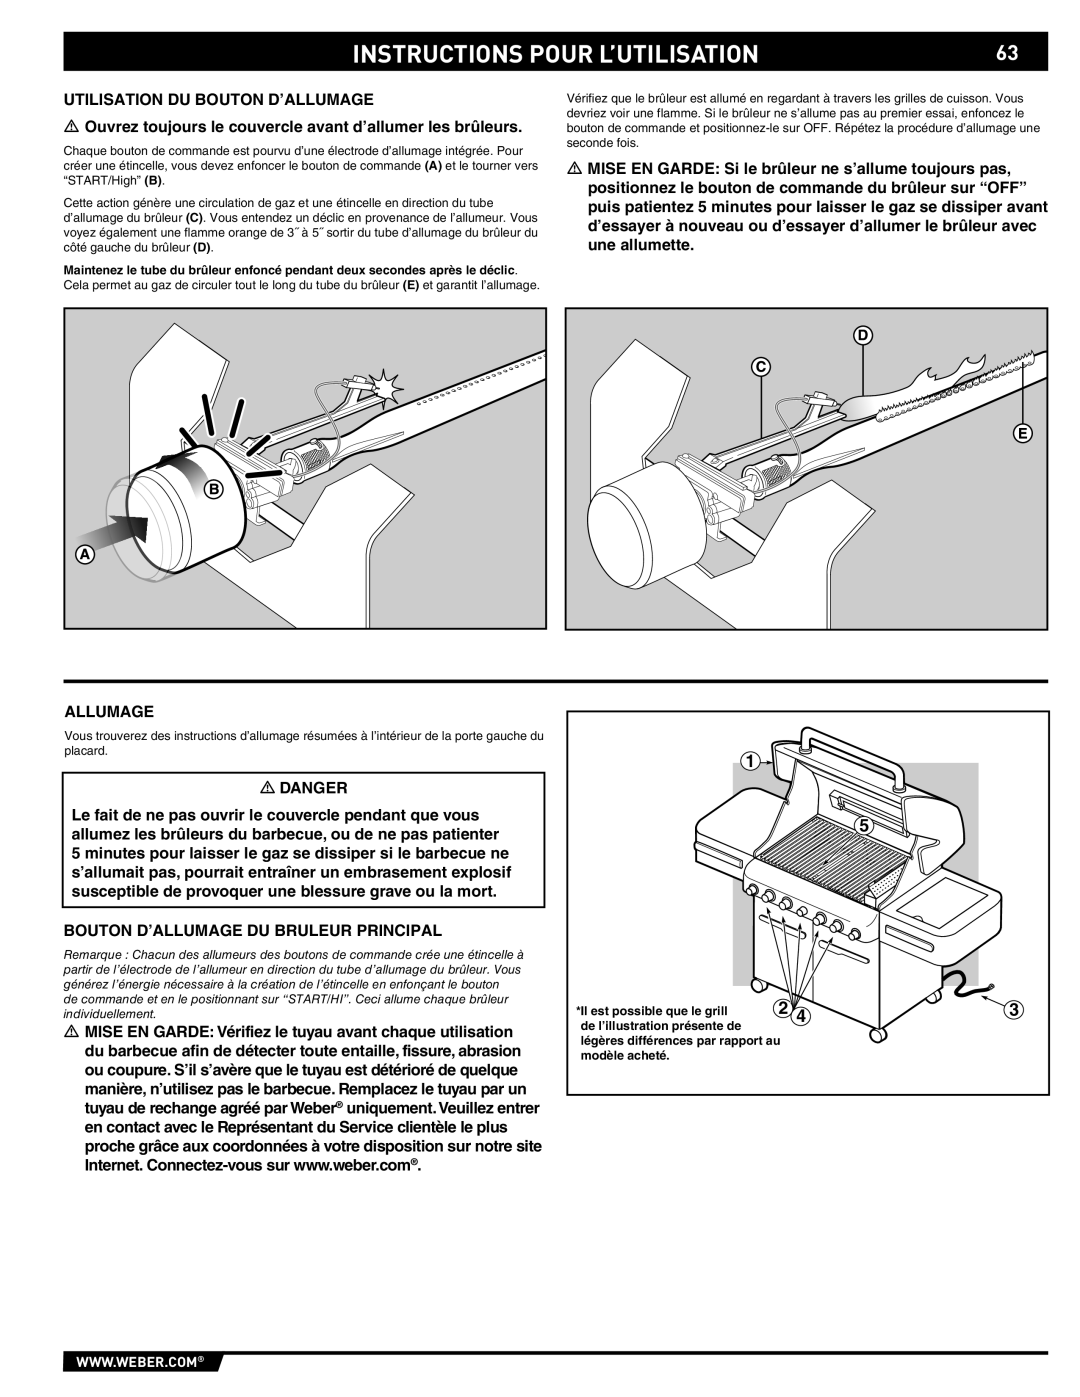 Weber S-470TM manual Instructions Pour L’Utilisation, Il est possible que le grill, de l’illustration présente de 